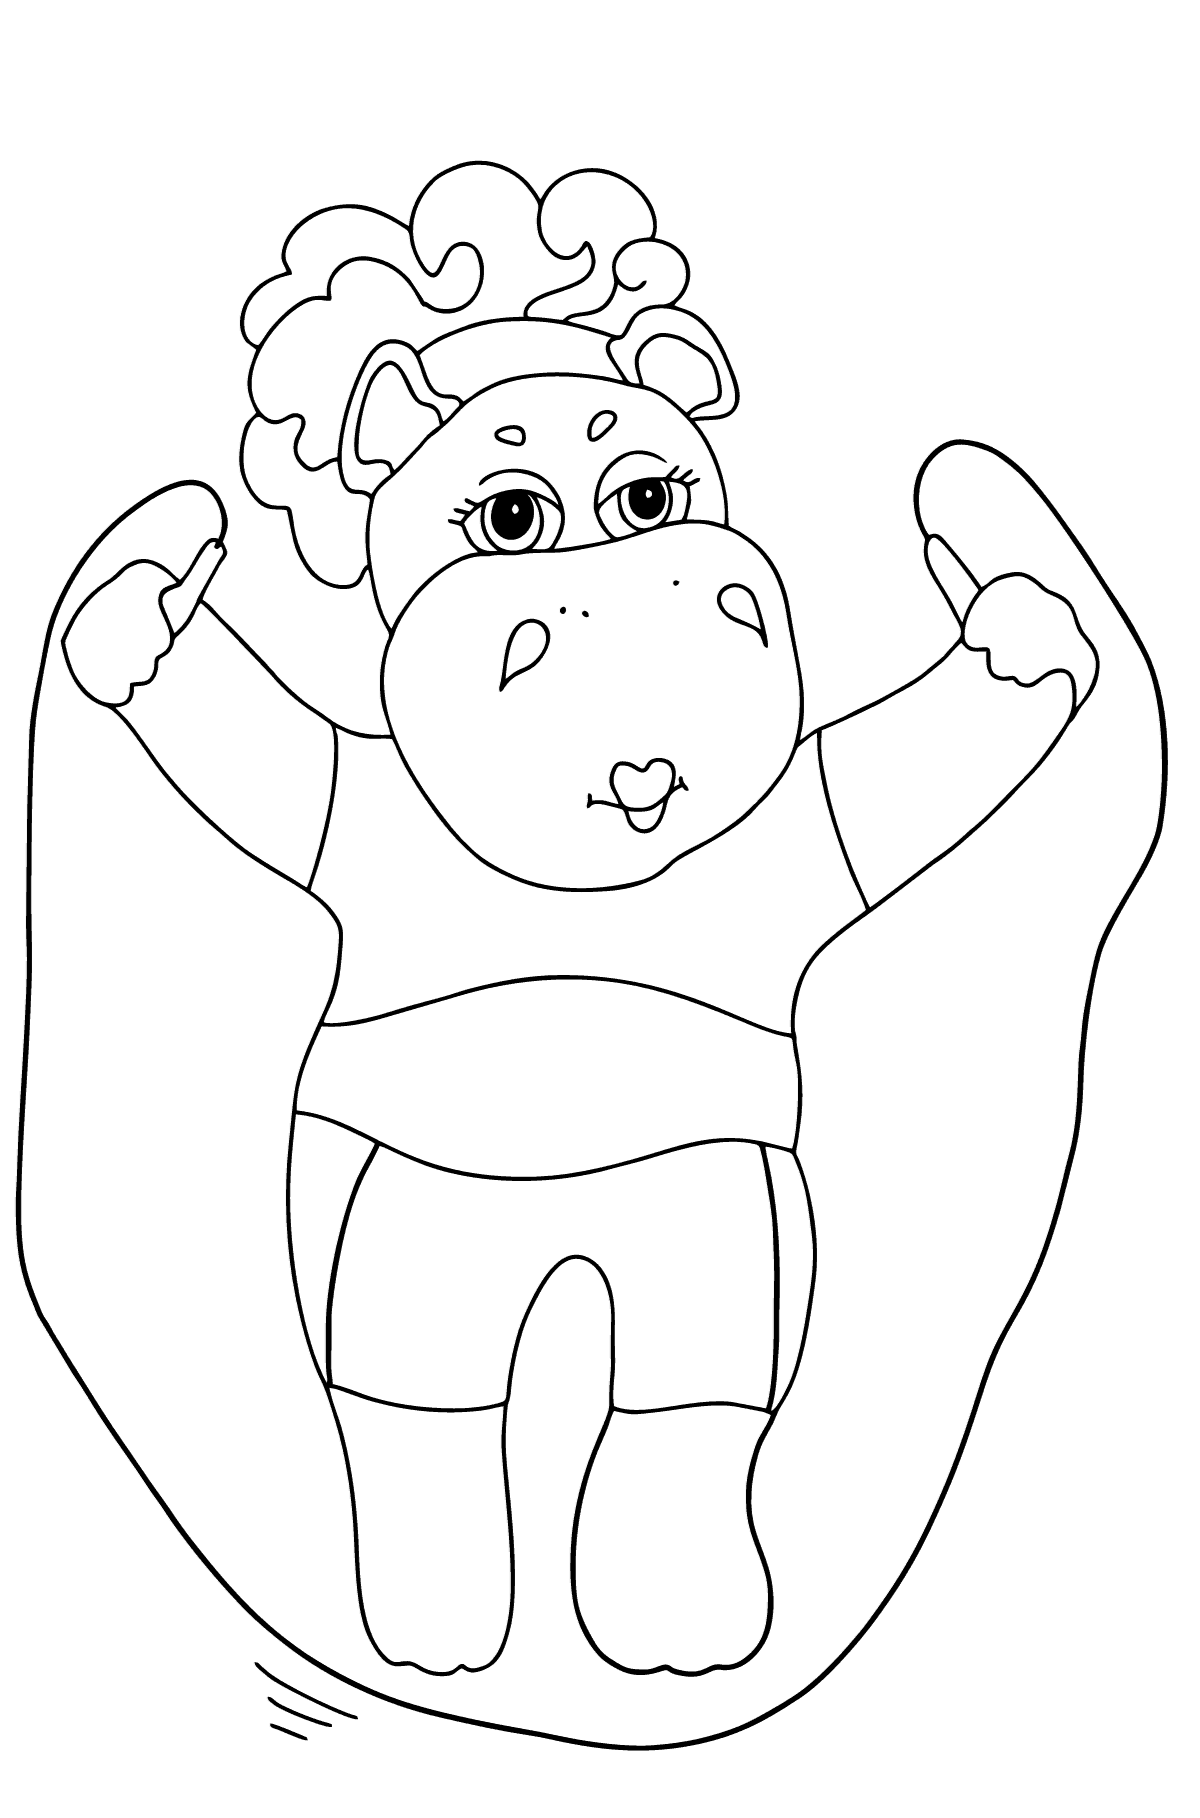 Kleurplaat vrolijke nijlpaard - kleurplaten voor kinderen